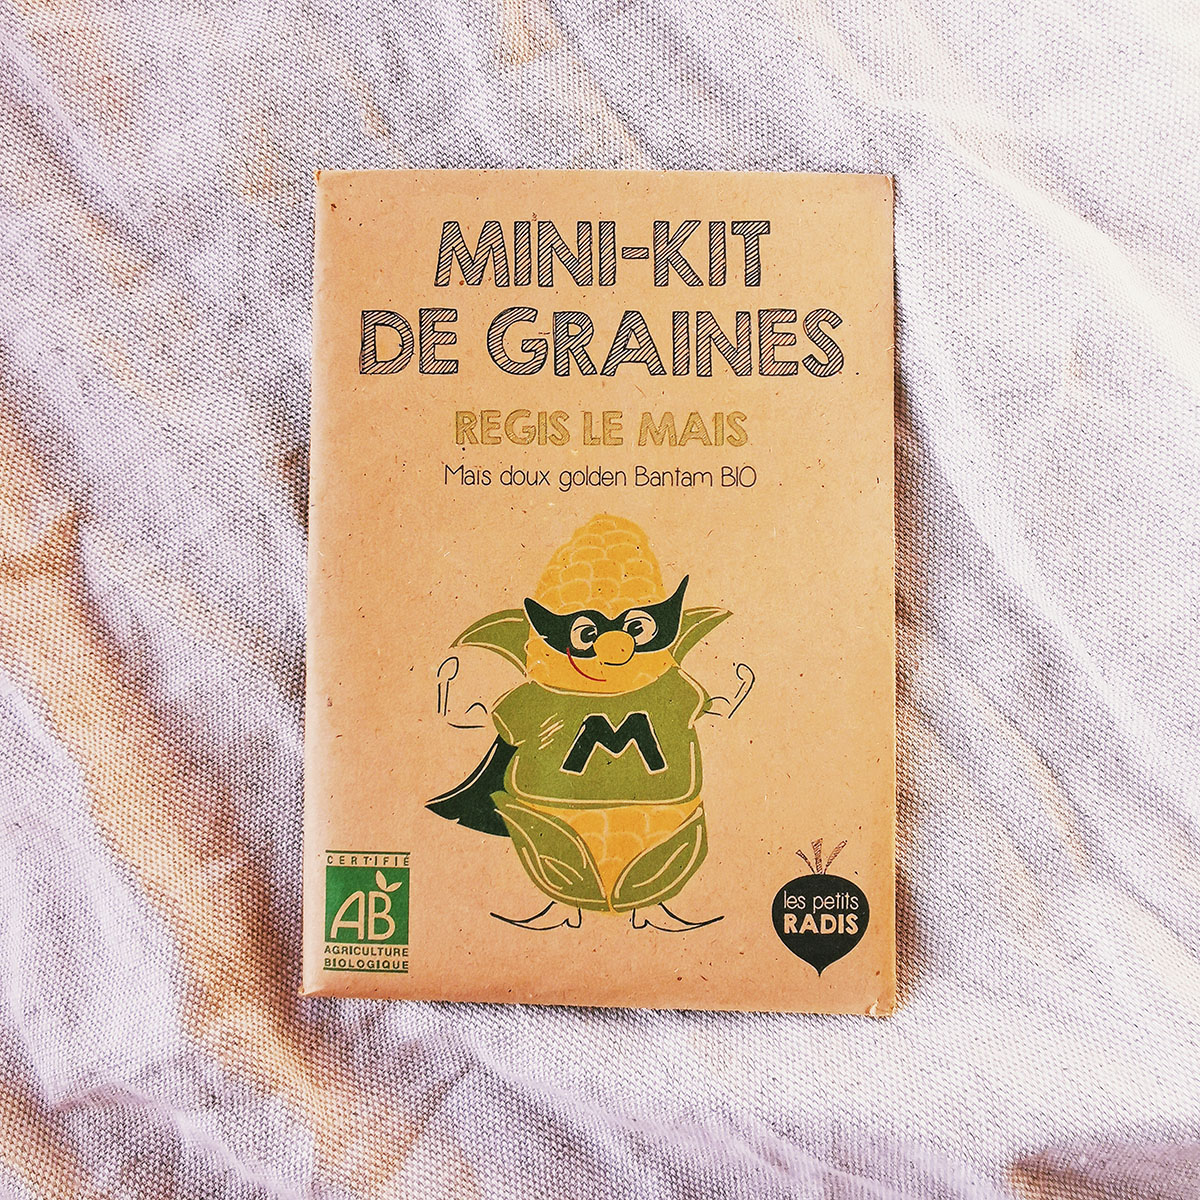 Mini kit de graines bio de Régis le maïs